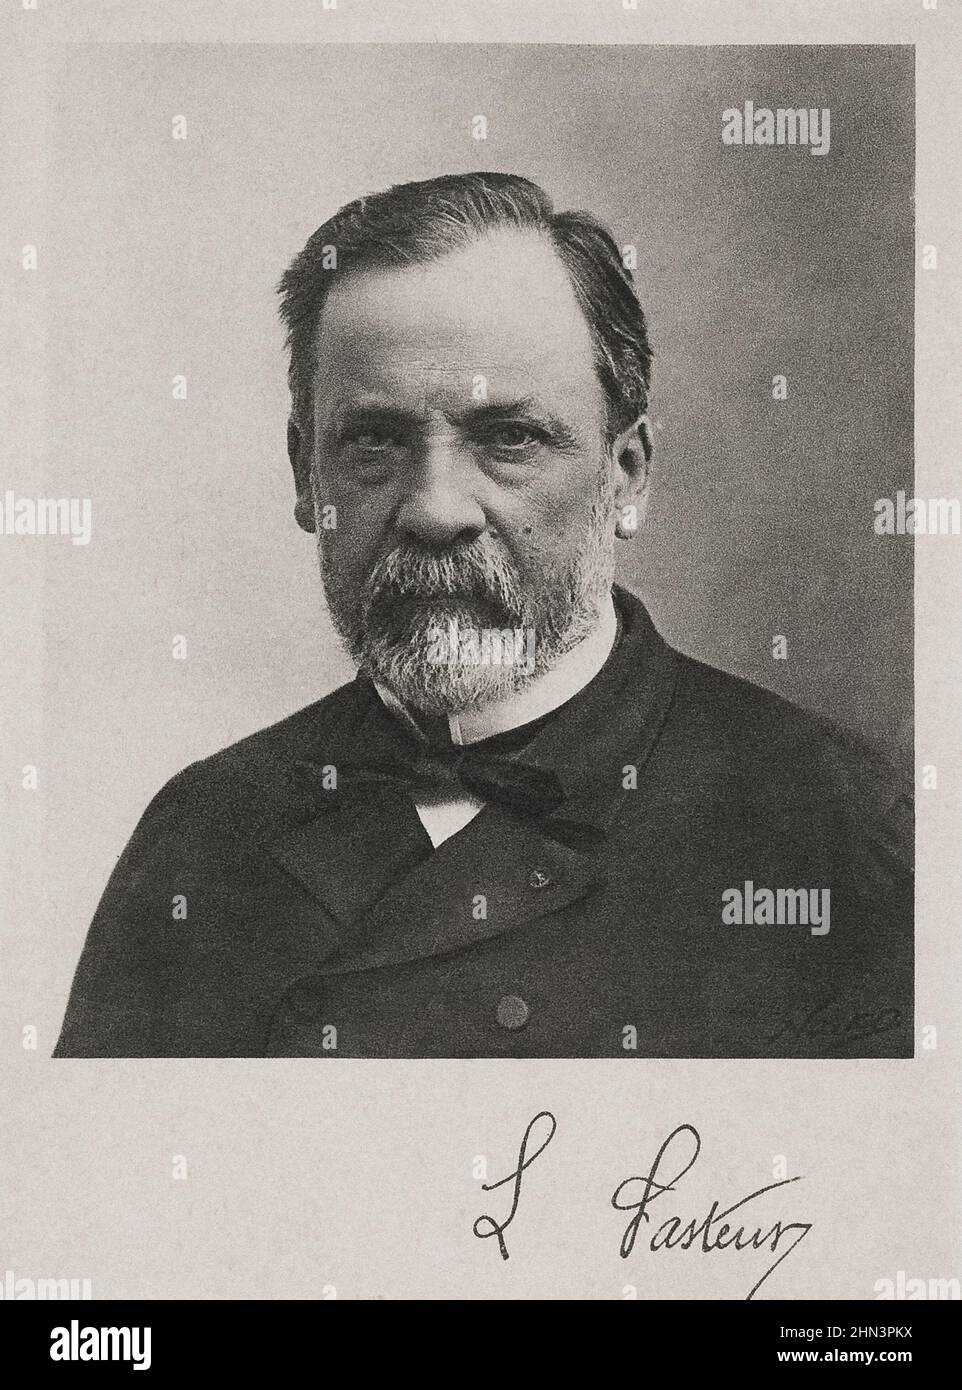 Porträt von Louis Pasteur. Louis Pasteur (1822 – 1895) war ein französischer Chemiker und Mikrobiologe, der für seine Entdeckungen über die Prinzipien des Impfens bekannt war Stockfoto